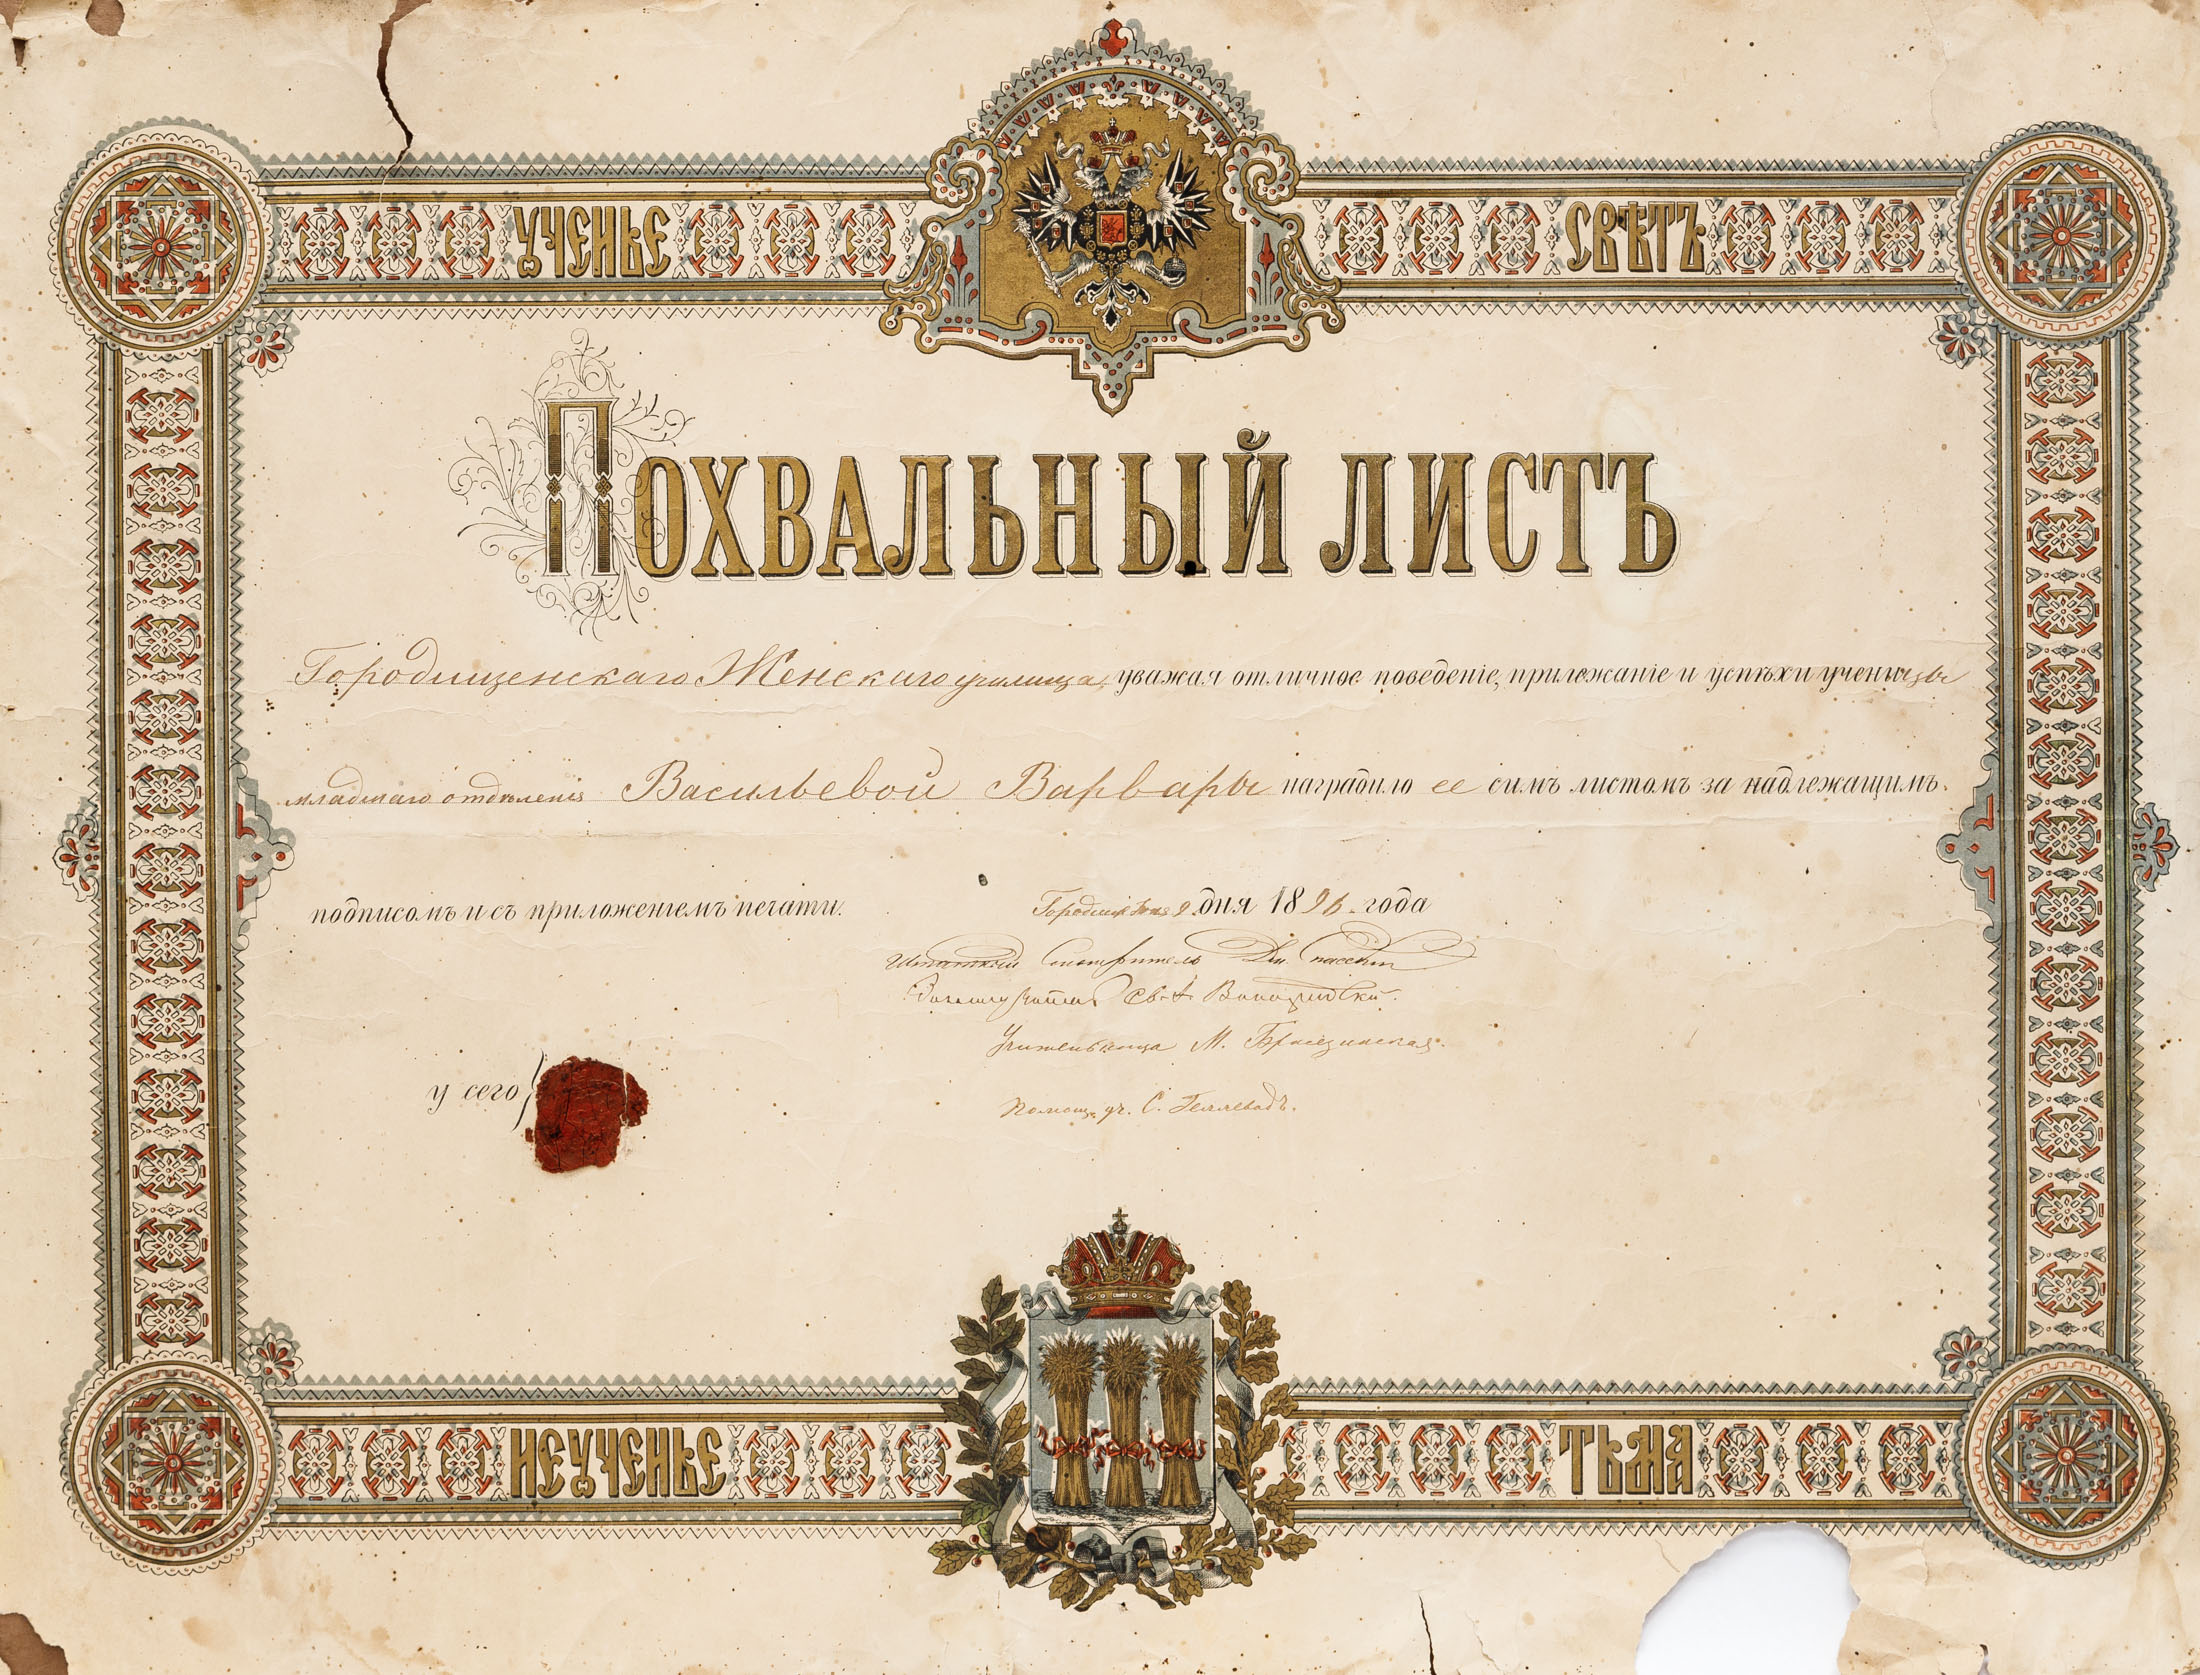 Похвальный лист Городищенского женского училища